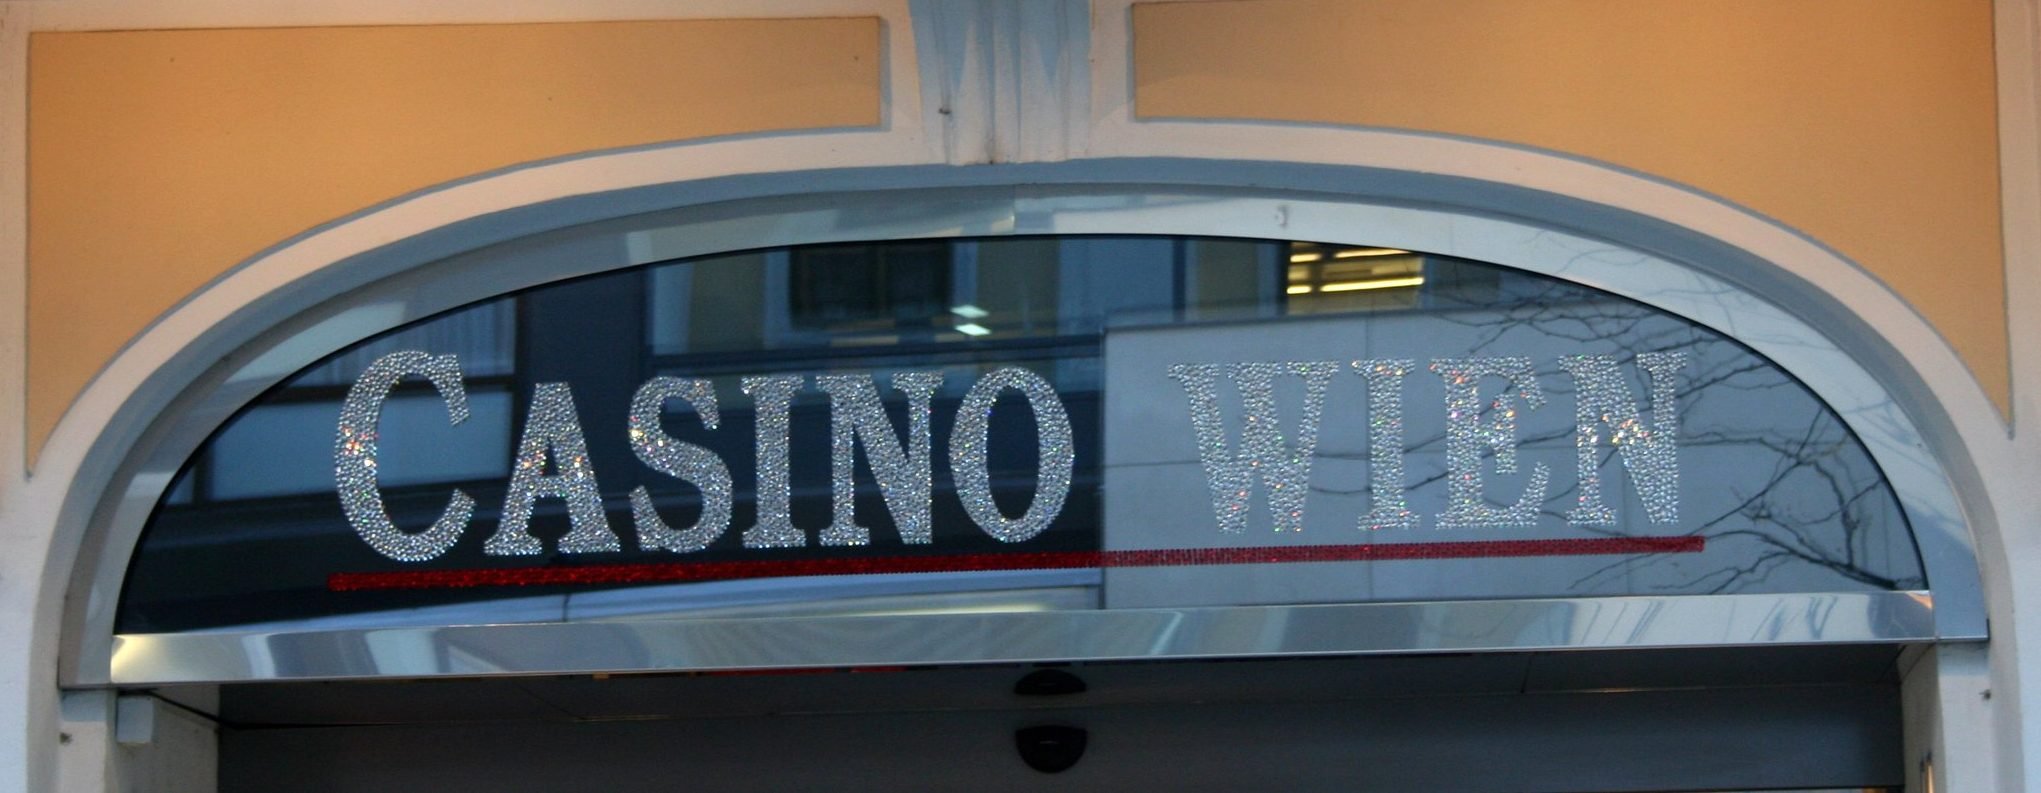 Casino Wien Fassade|Ein Roulettetisch in einem Casino||Spielgeld vor Spieljetons|Euro Scheine